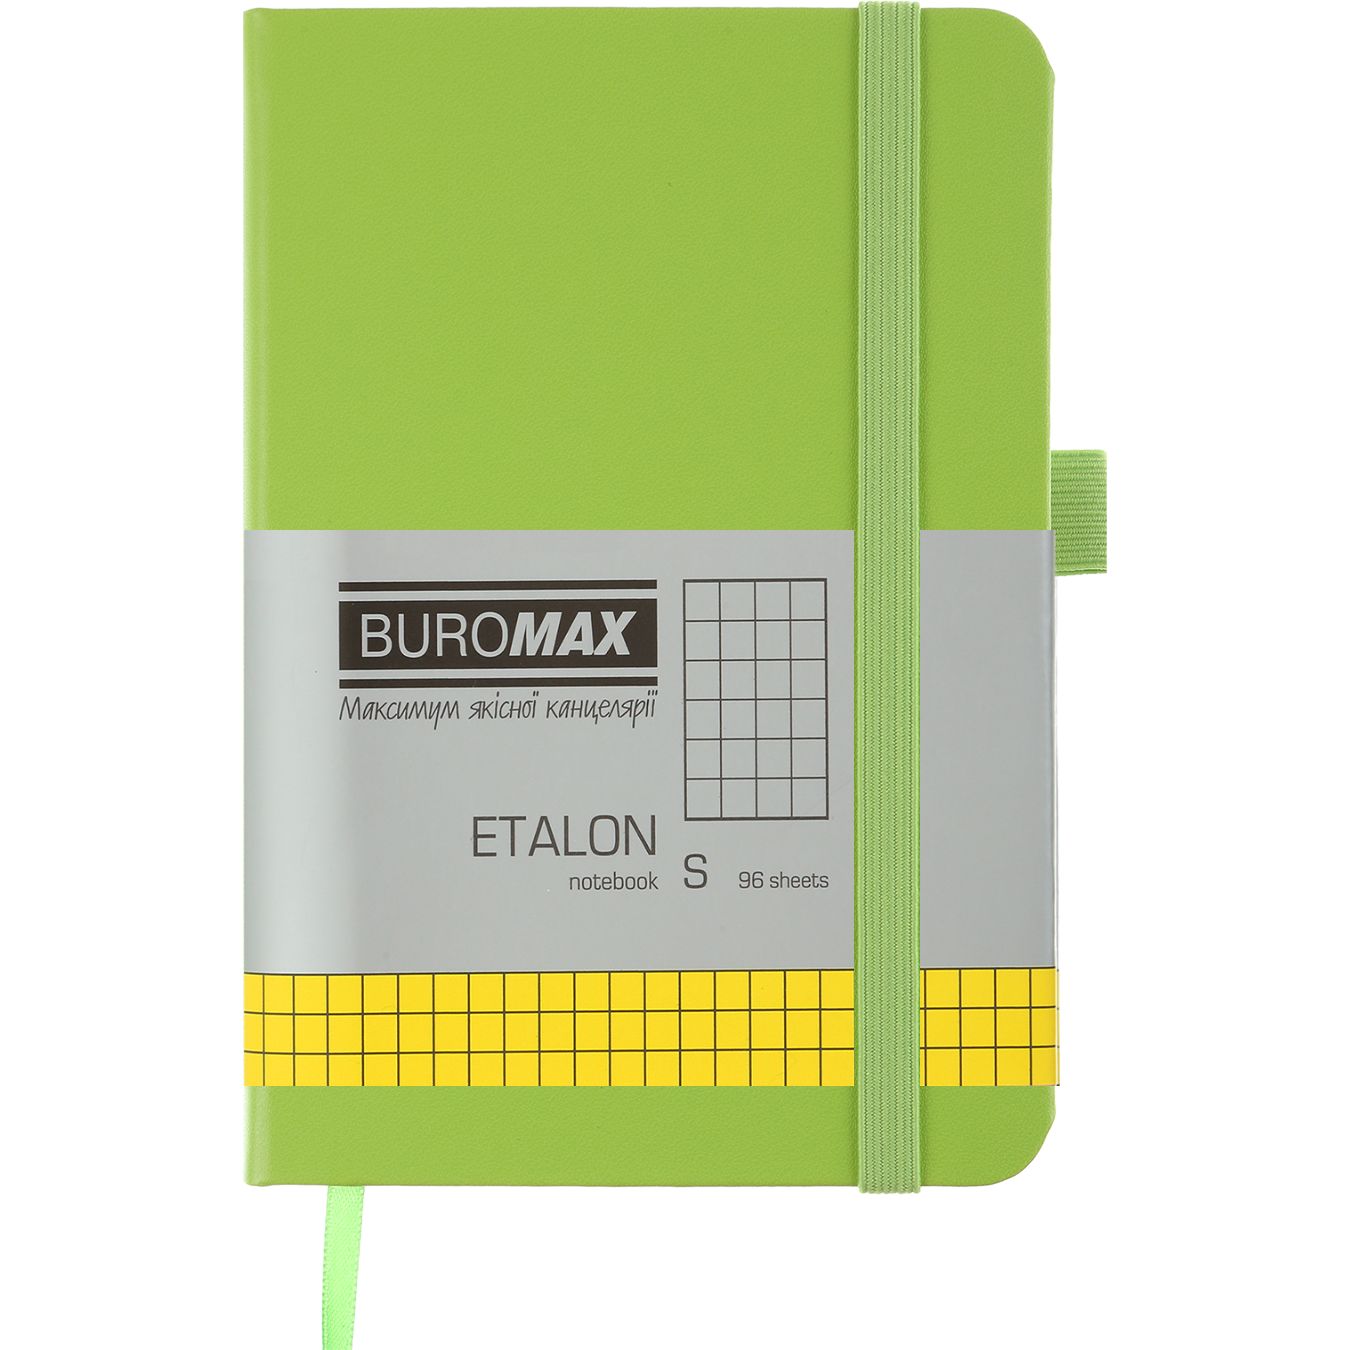 Книга записная Buromax Etalon в клеточку 140х95 мм салатовая 96 листов (BM.296160-15) - фото 1